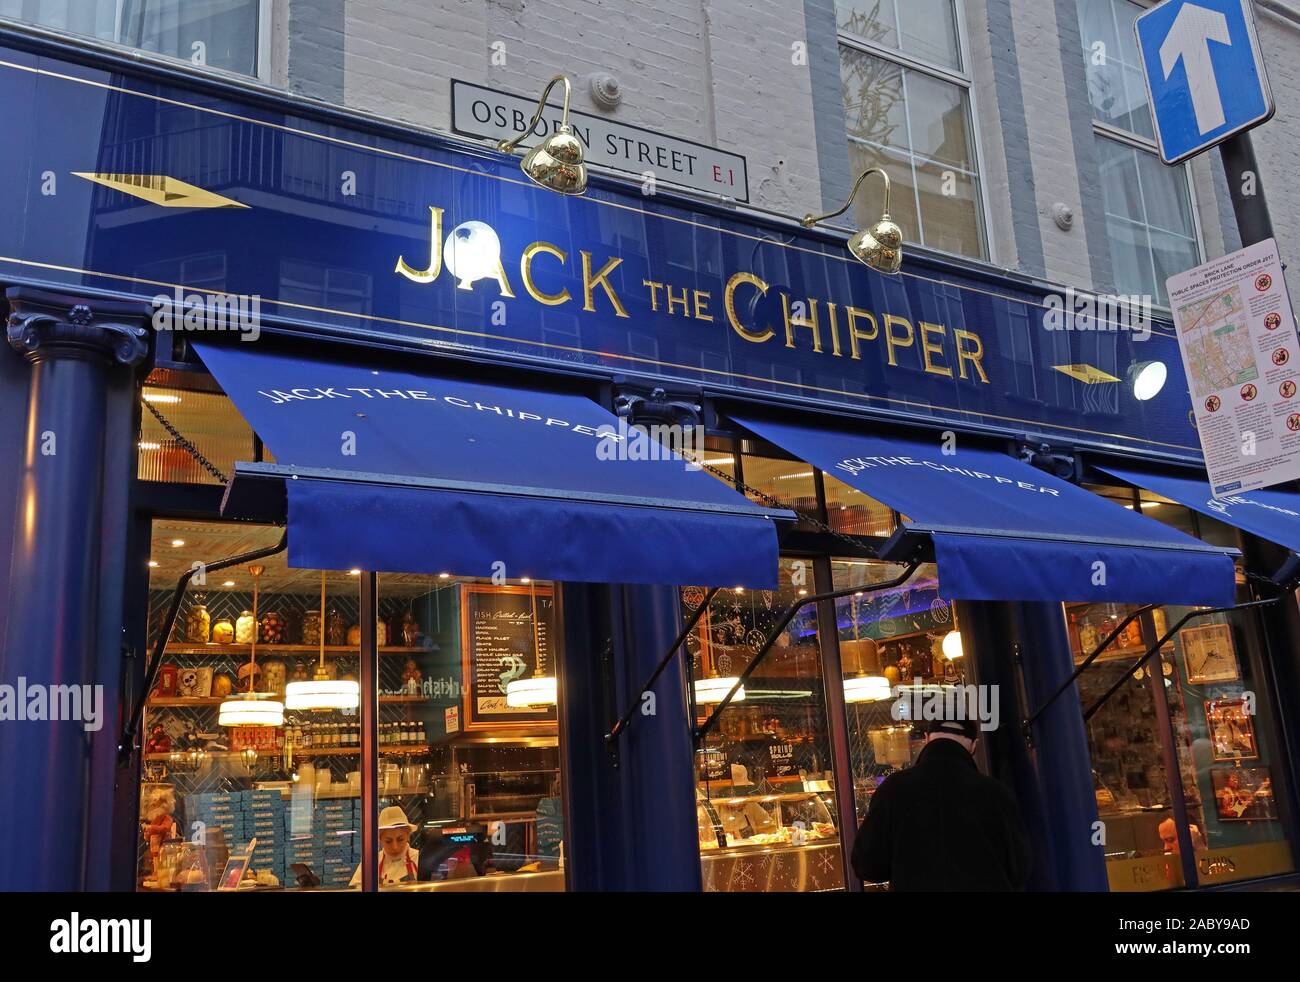 Jack Il Chipper, chiamato dopo Jack lo Squartatore, 74 Whitechapel High St, Aldgate, Shadwell, Londra, Inghilterra, Regno Unito, E1 7QX Foto Stock